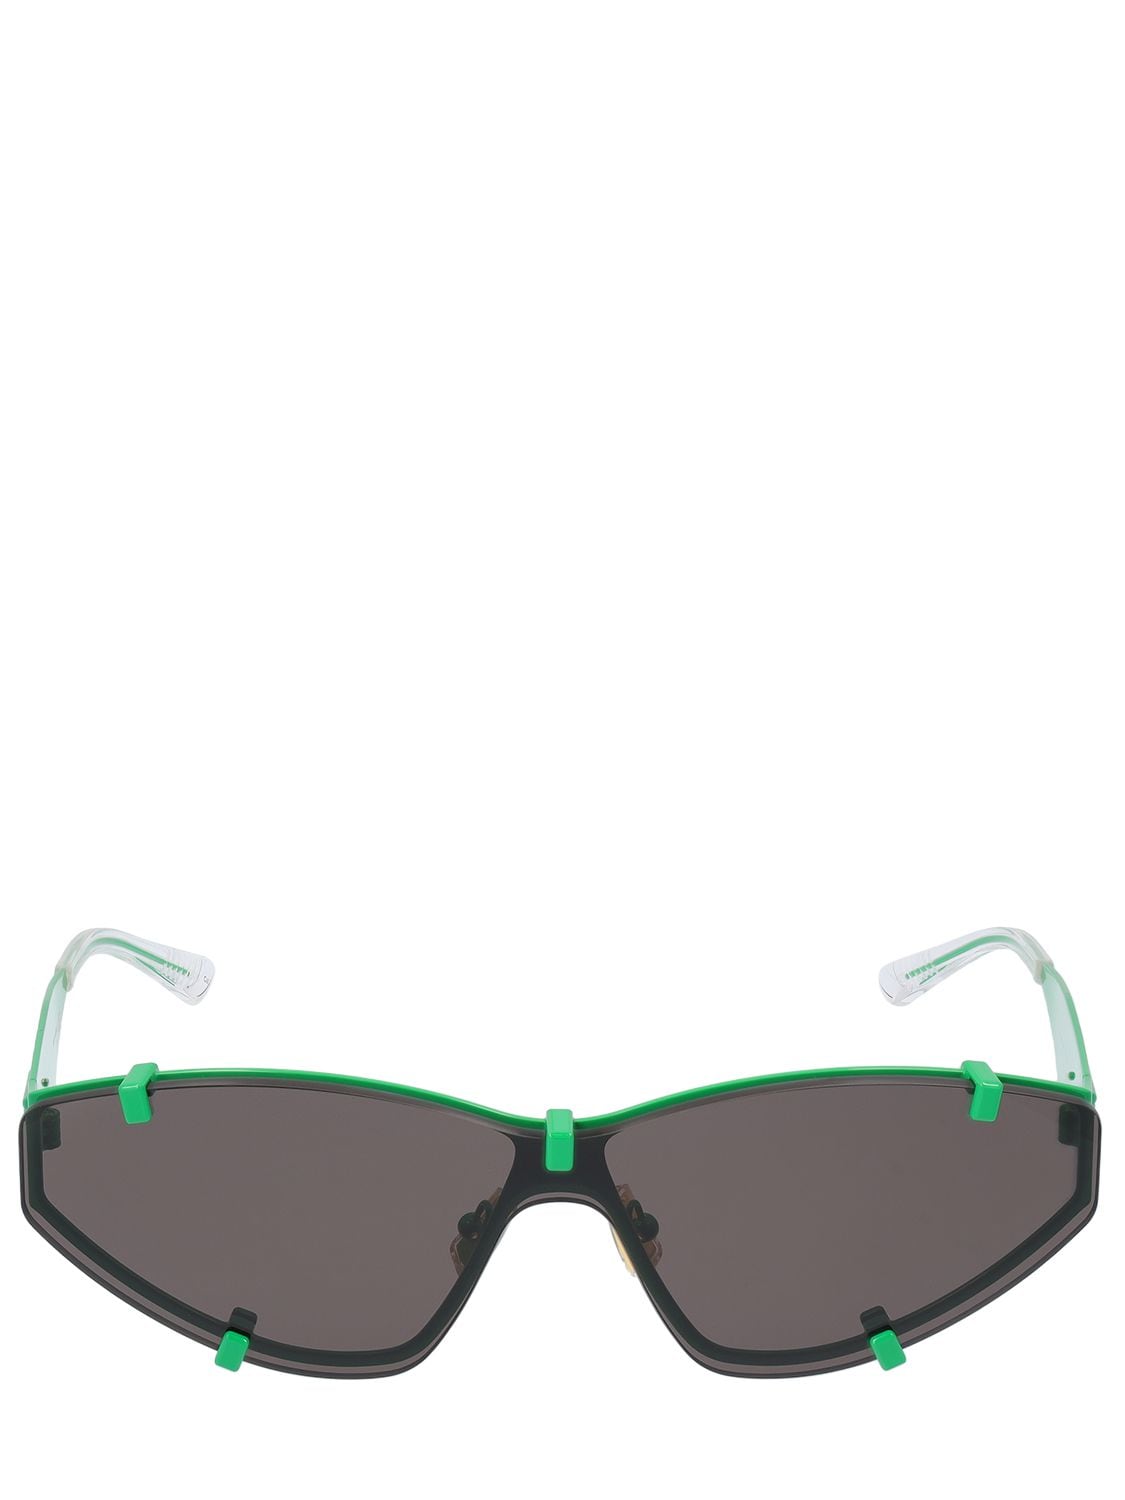 Bv1165s Cat-eye Metal Sunglasses